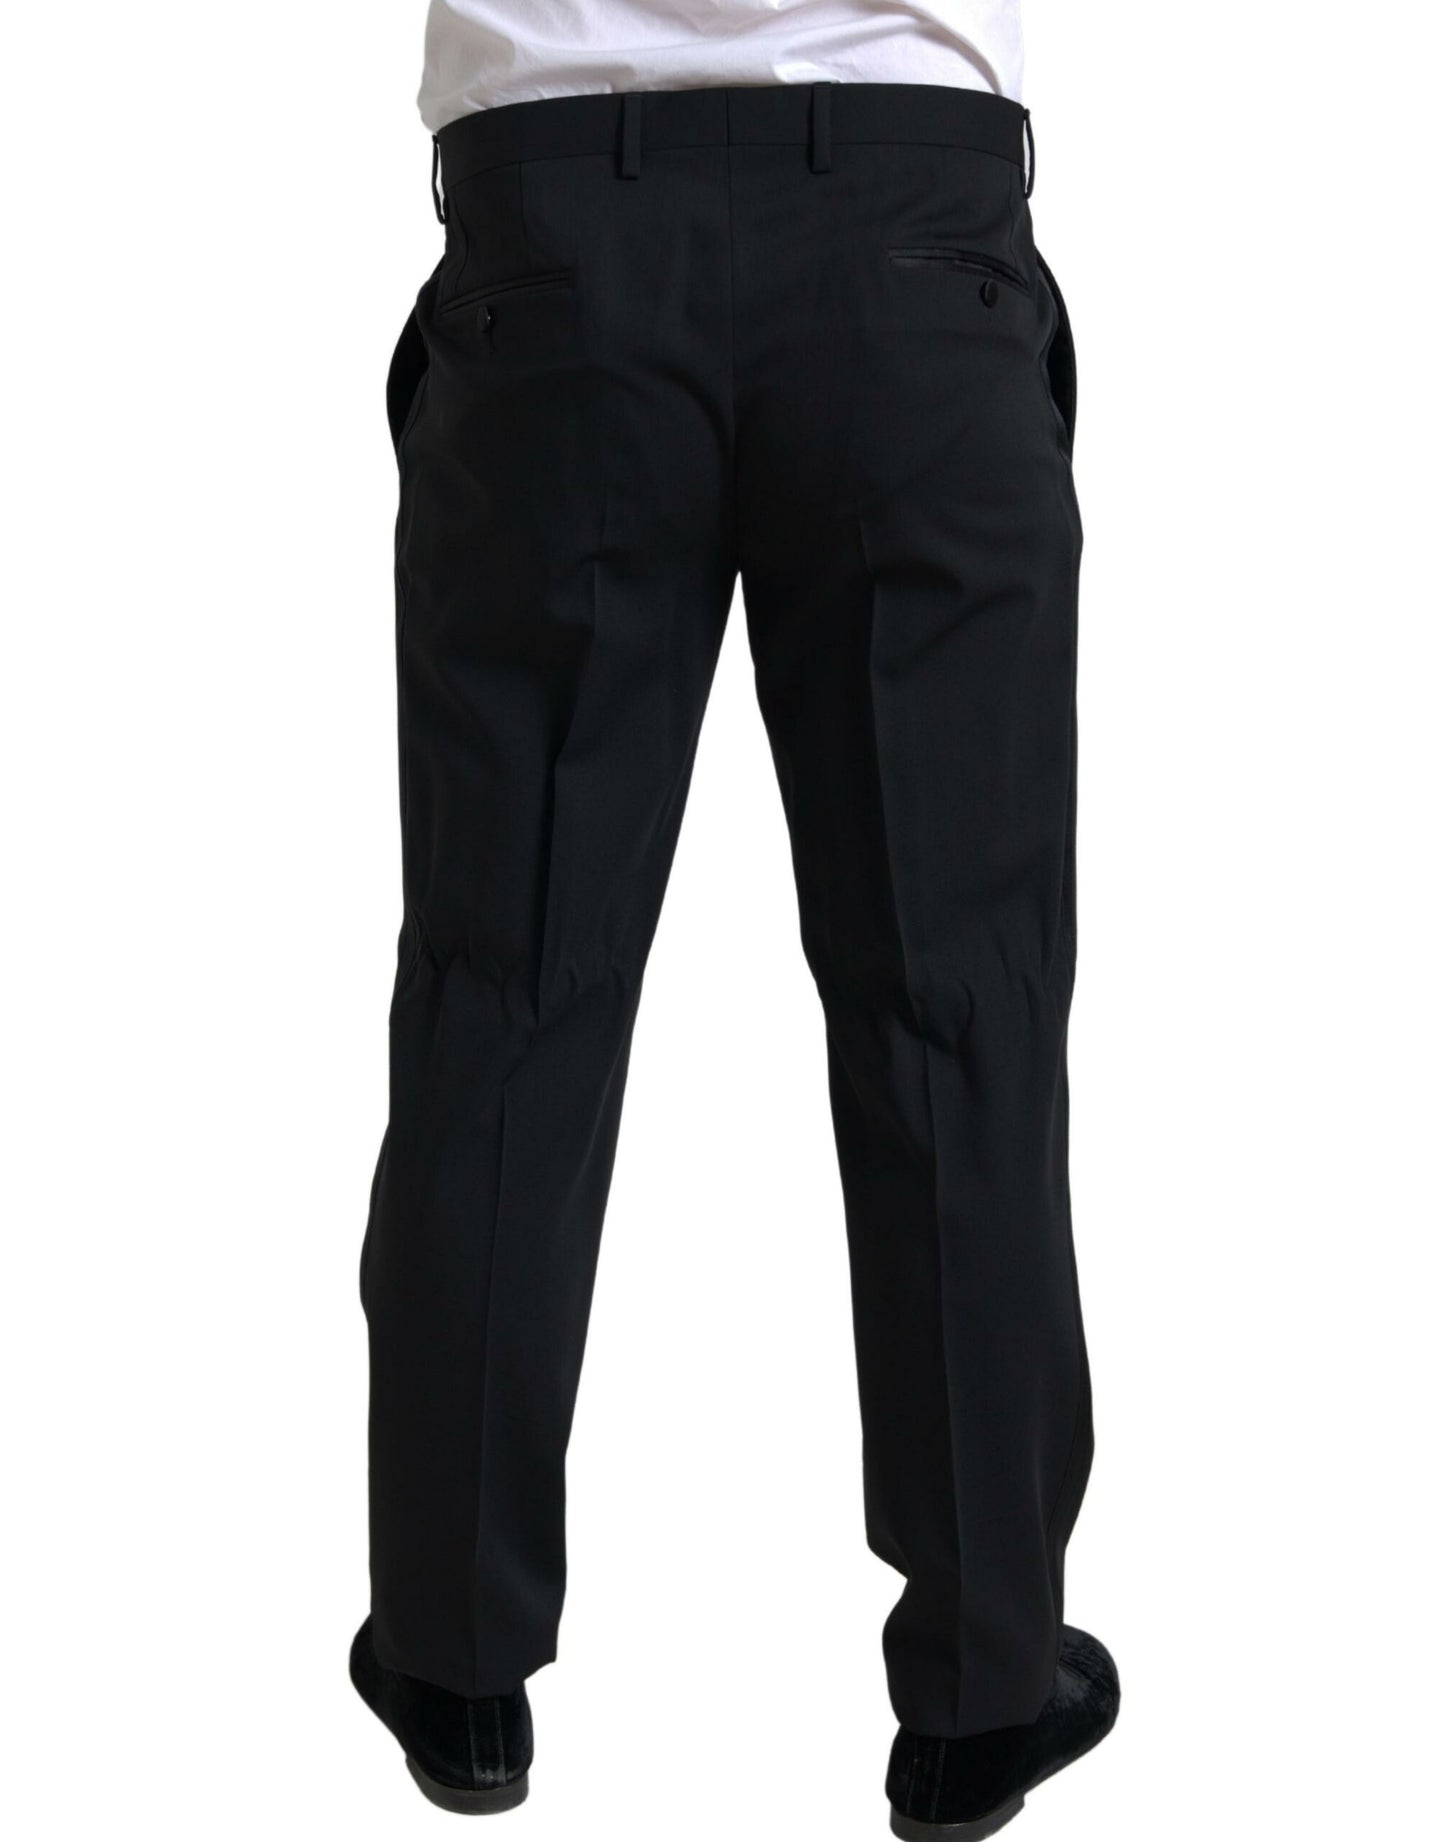 Elegant Black Slim Fit Two-Piece Suit